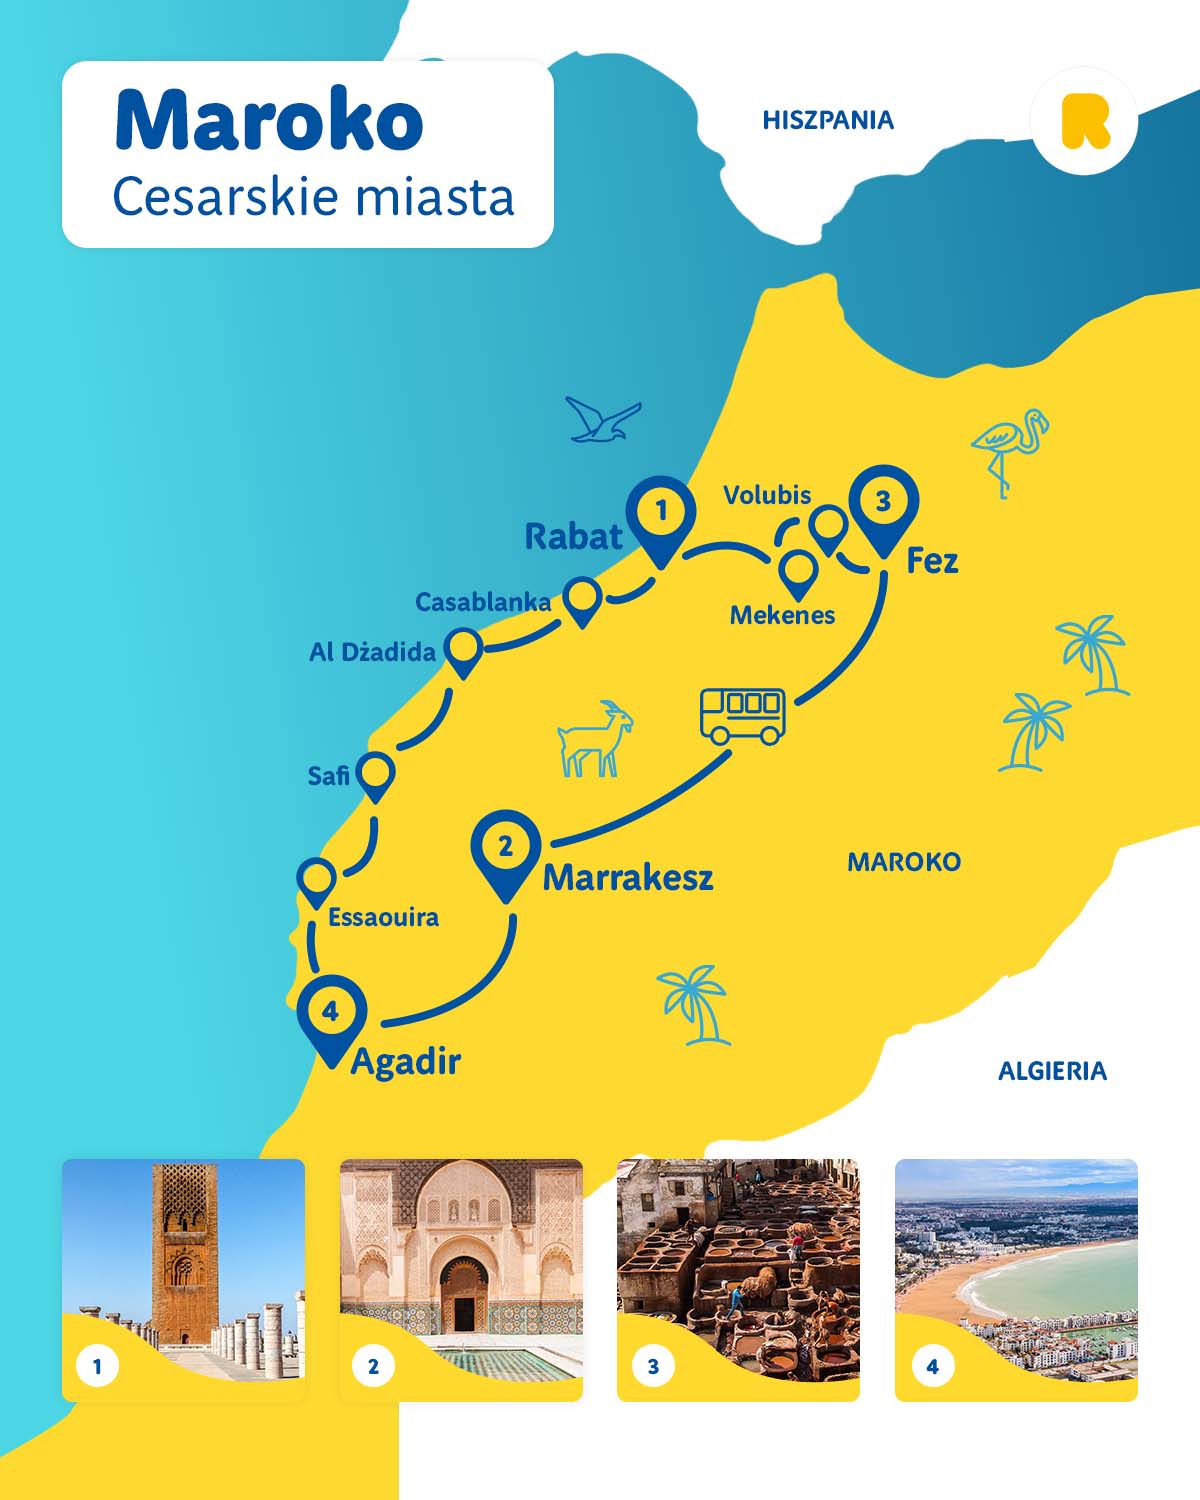 Maroko Cesarskie Miasta – Geotour Chorzów poleca